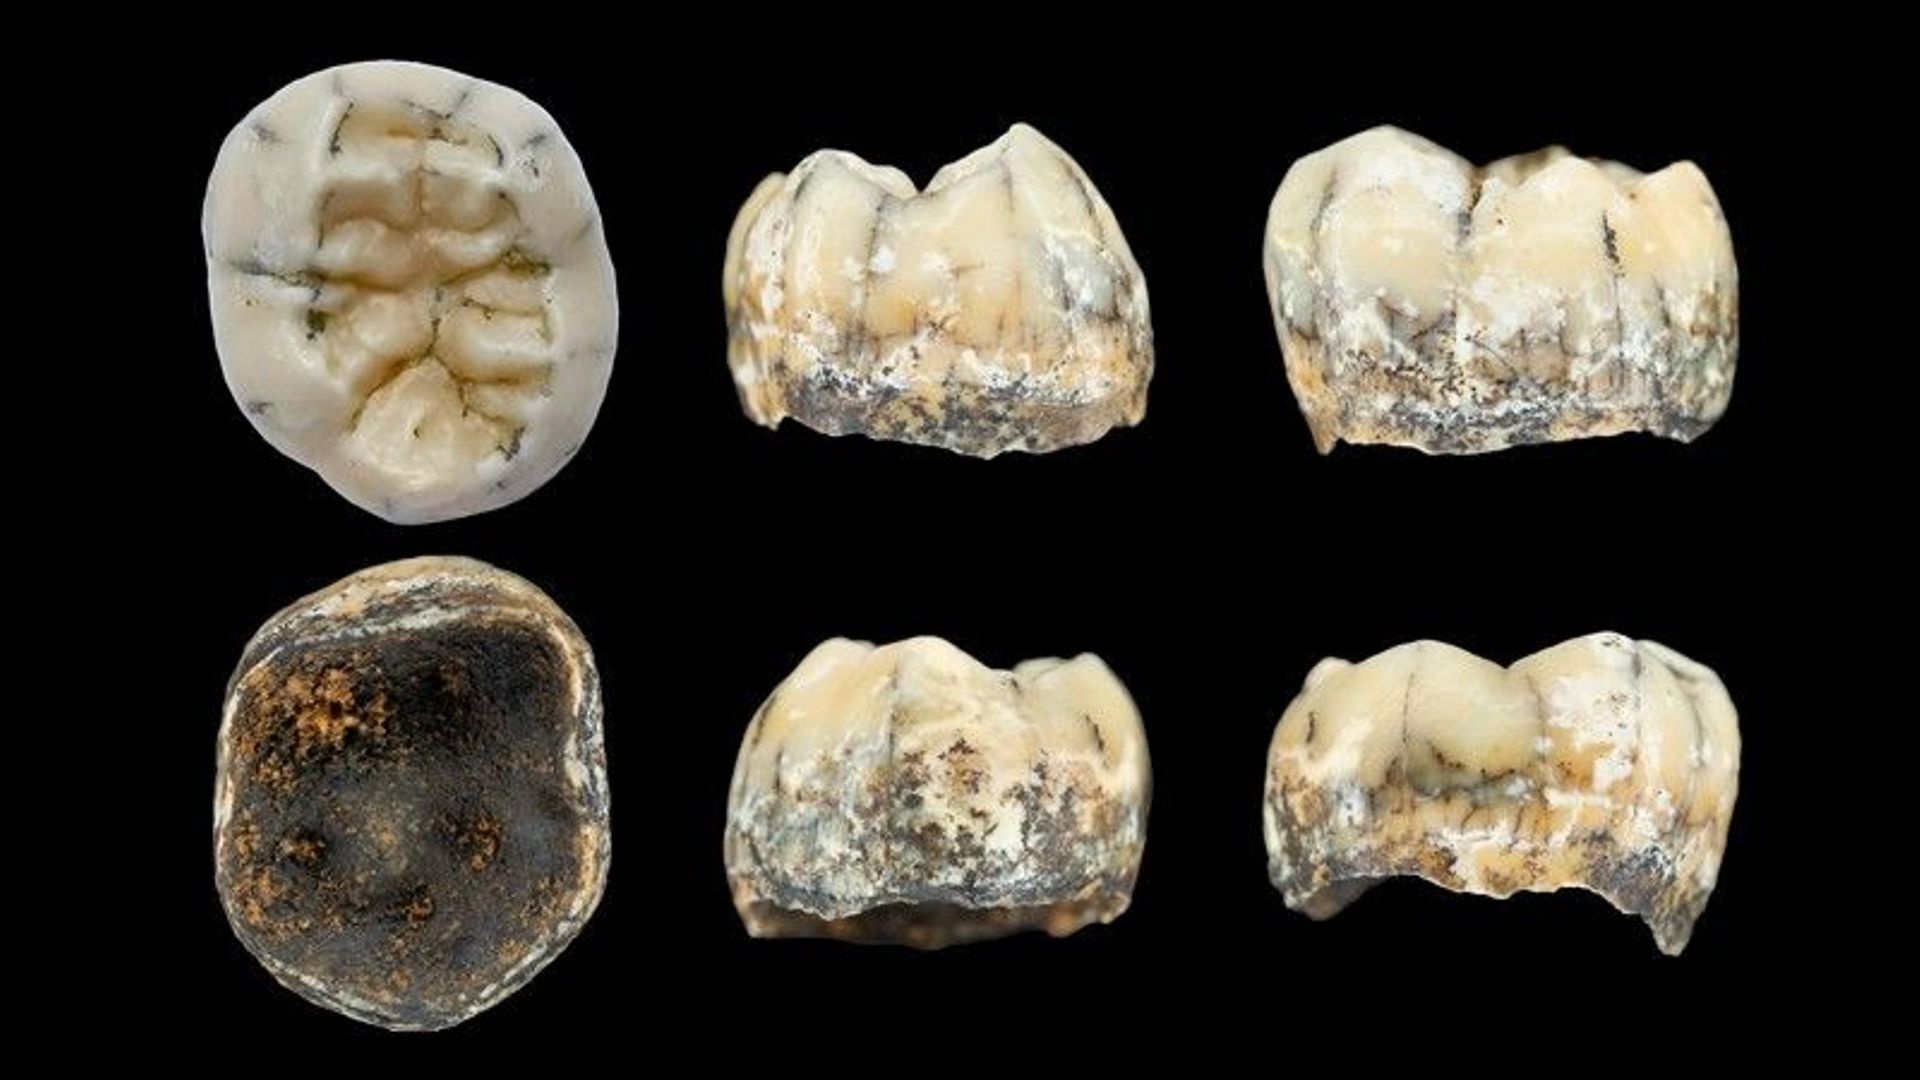 Dénisoviens : une dent retrouvée dans une grotte au Laos éclaircit le mystère de cette espèce sœur des humains modernes